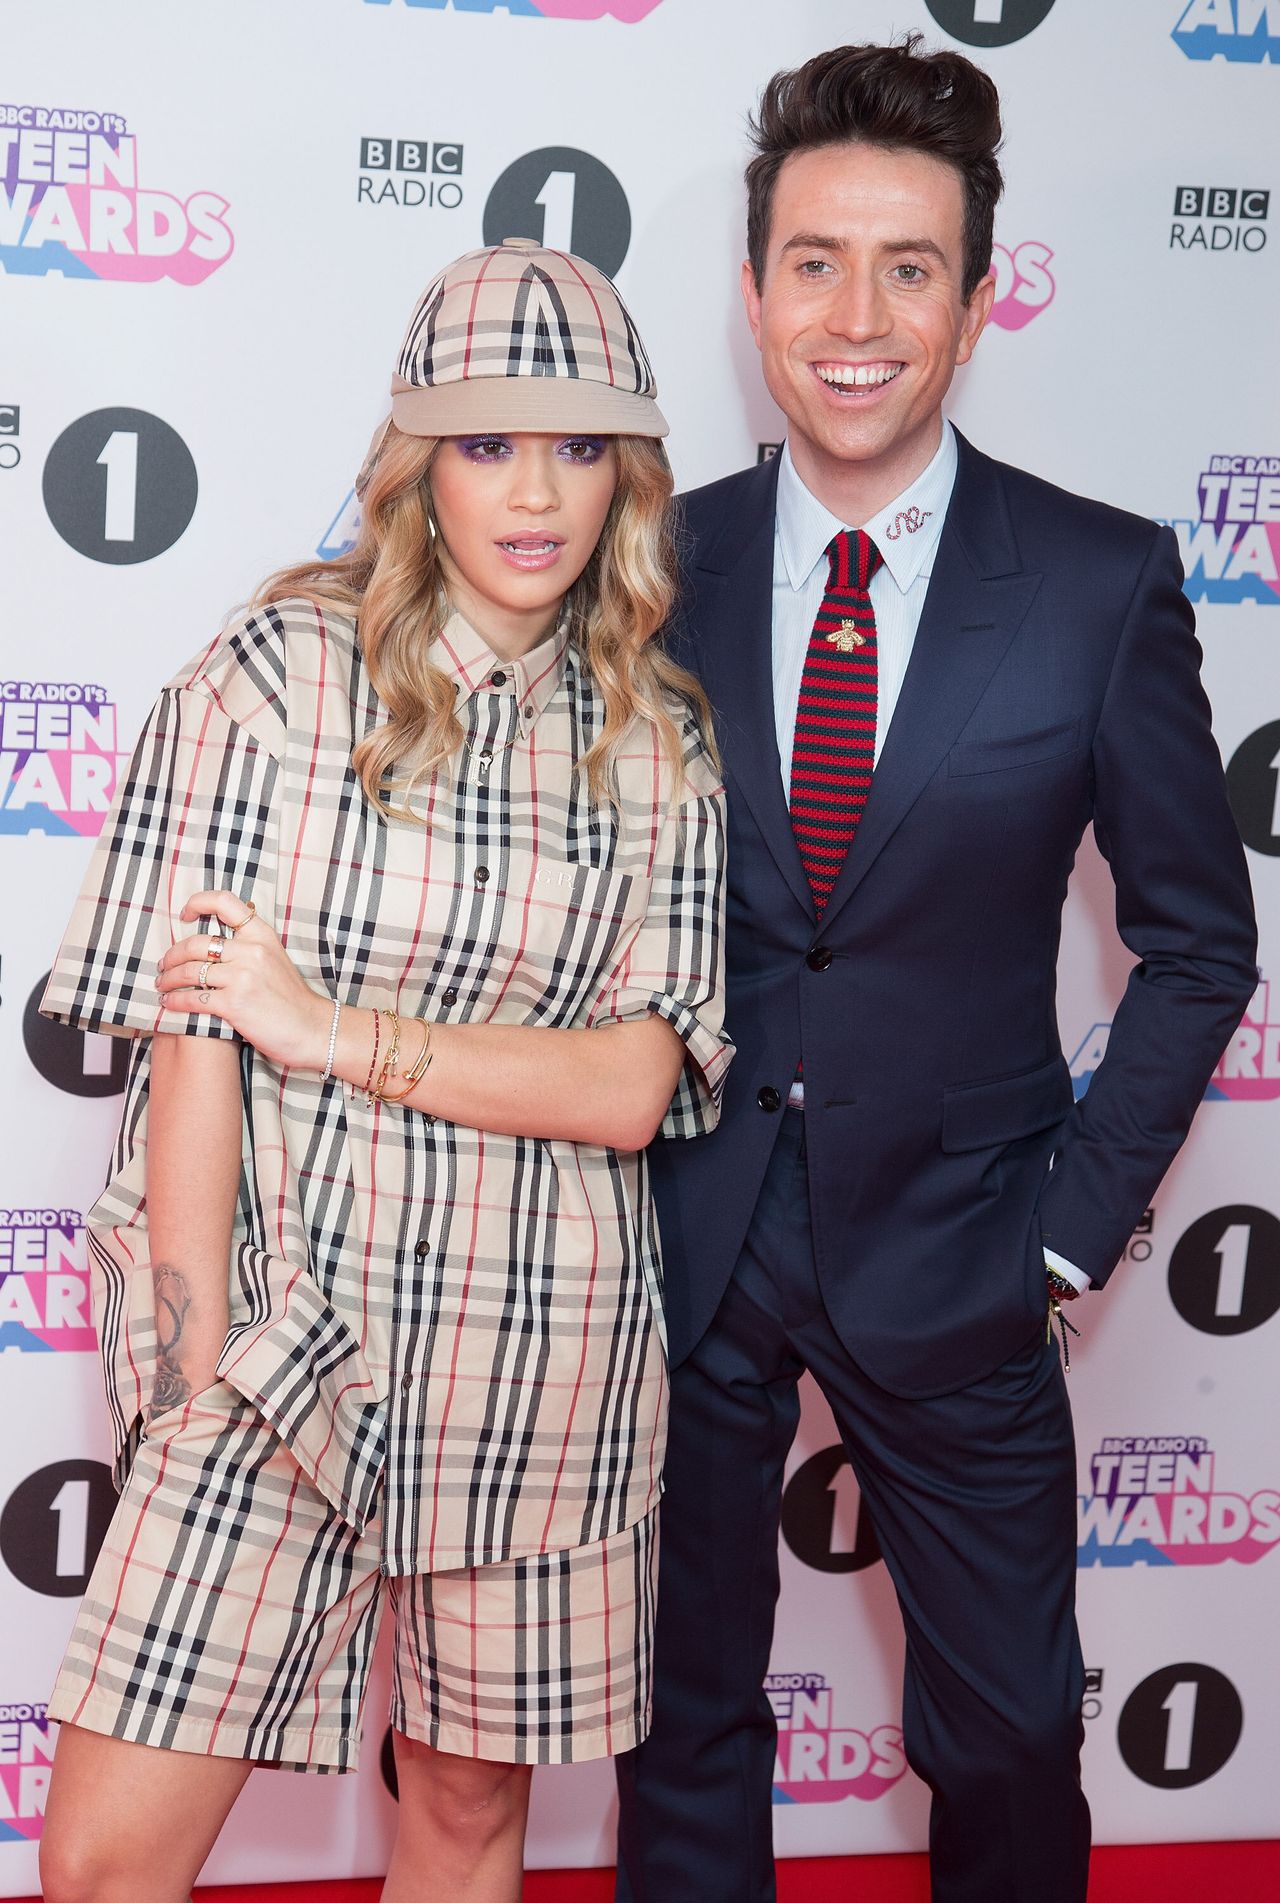 Nick with Rita Ora at the 2017 Teen Awards